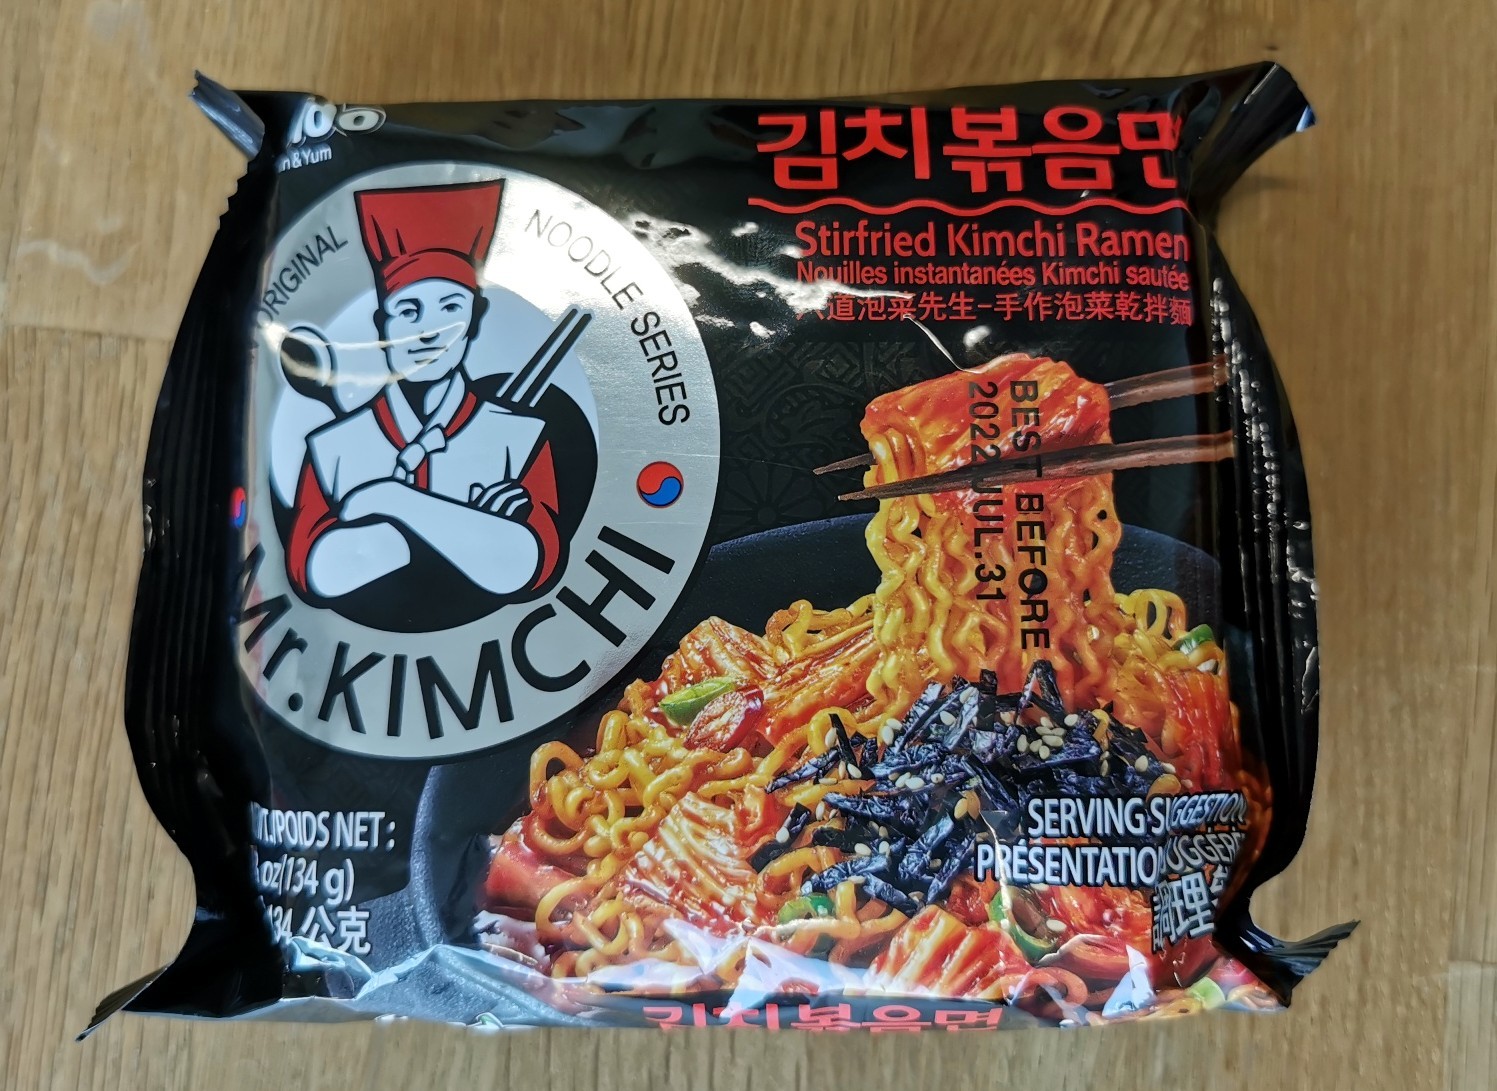 #2268: Paldo „Mr. Kimchi Stirfried Kimchi Ramen“